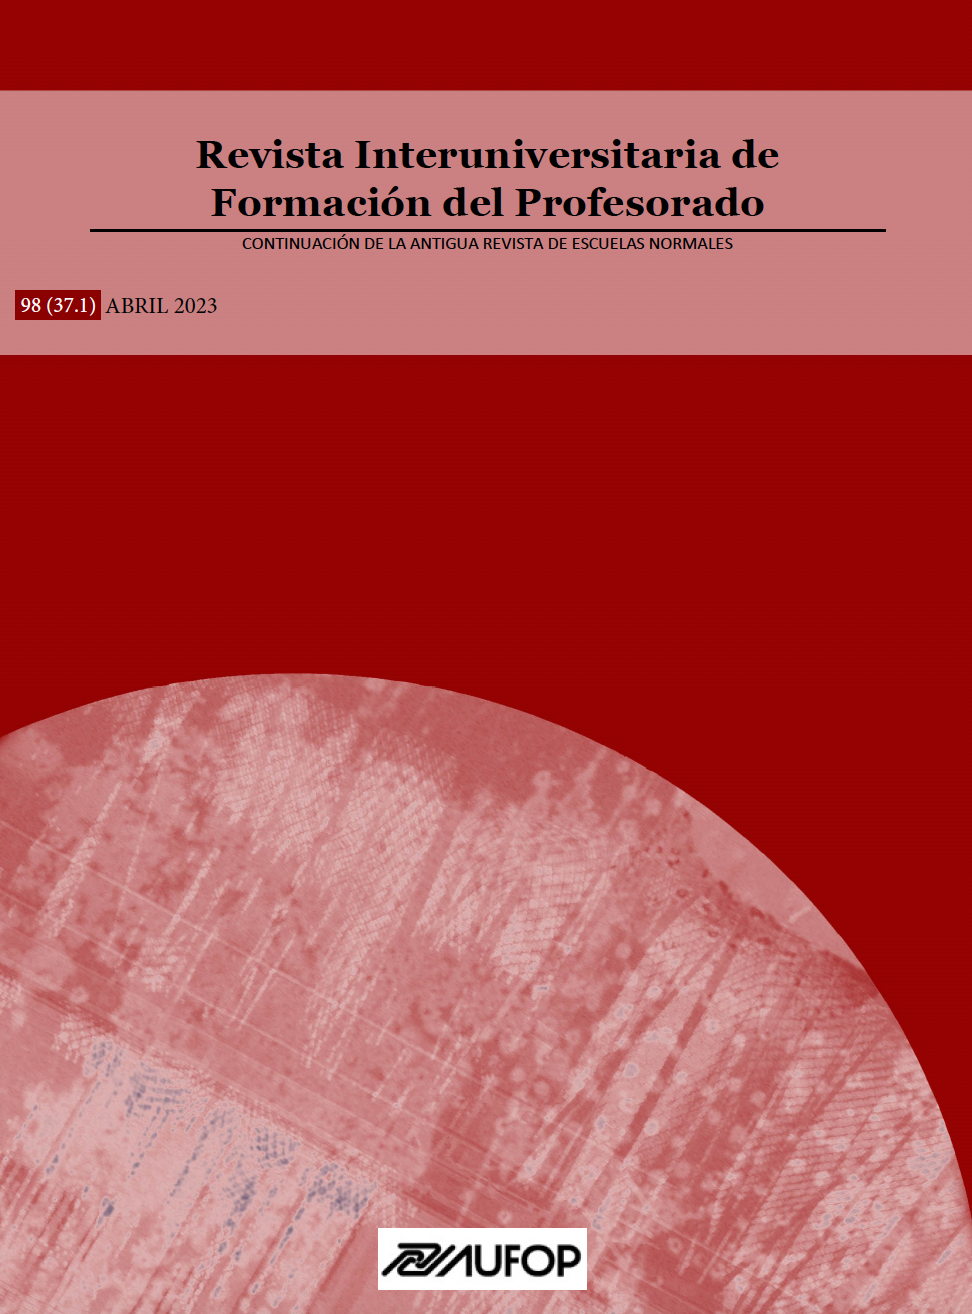 					Ver Vol. 98 Núm. 37.1 (2023): La acreditación del profesorado universitario en España: situación y perspectivas futuras
				